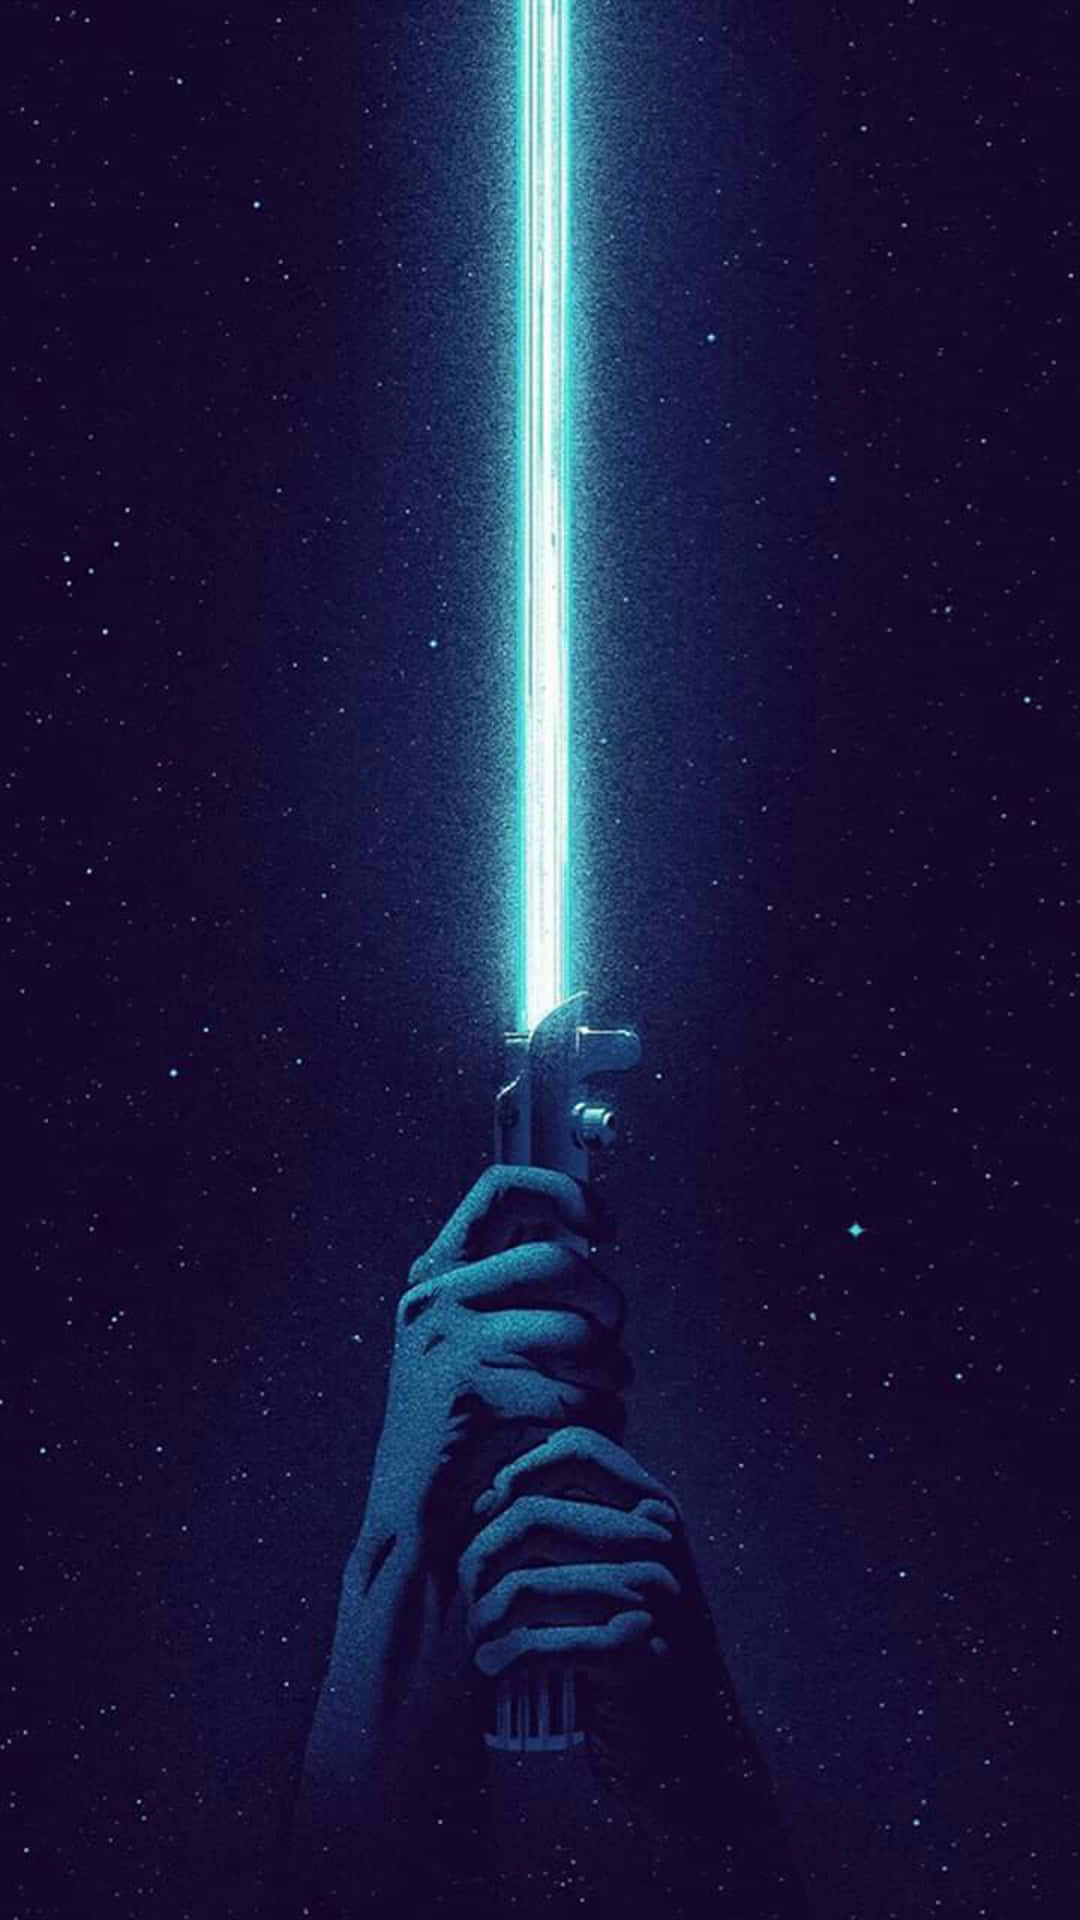 Fondode Pantalla De Star Wars Con Sable De Luz Azul.